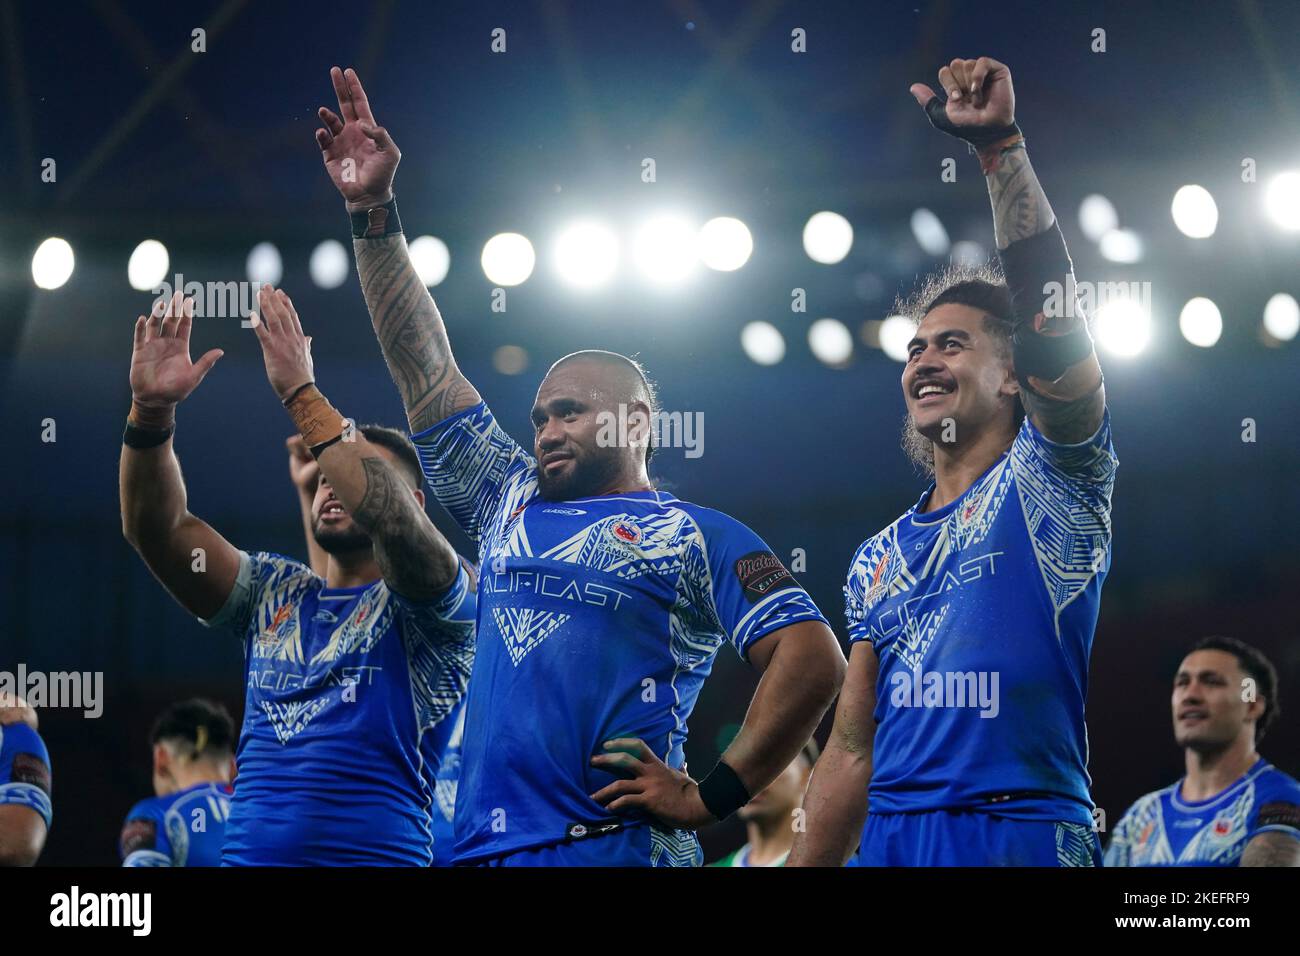 Samoa feiert nach dem Gewinn des Halbfinalspiels der Rugby League im Emirates Stadium, London. Bilddatum: Samstag, 12. November 2022. Stockfoto